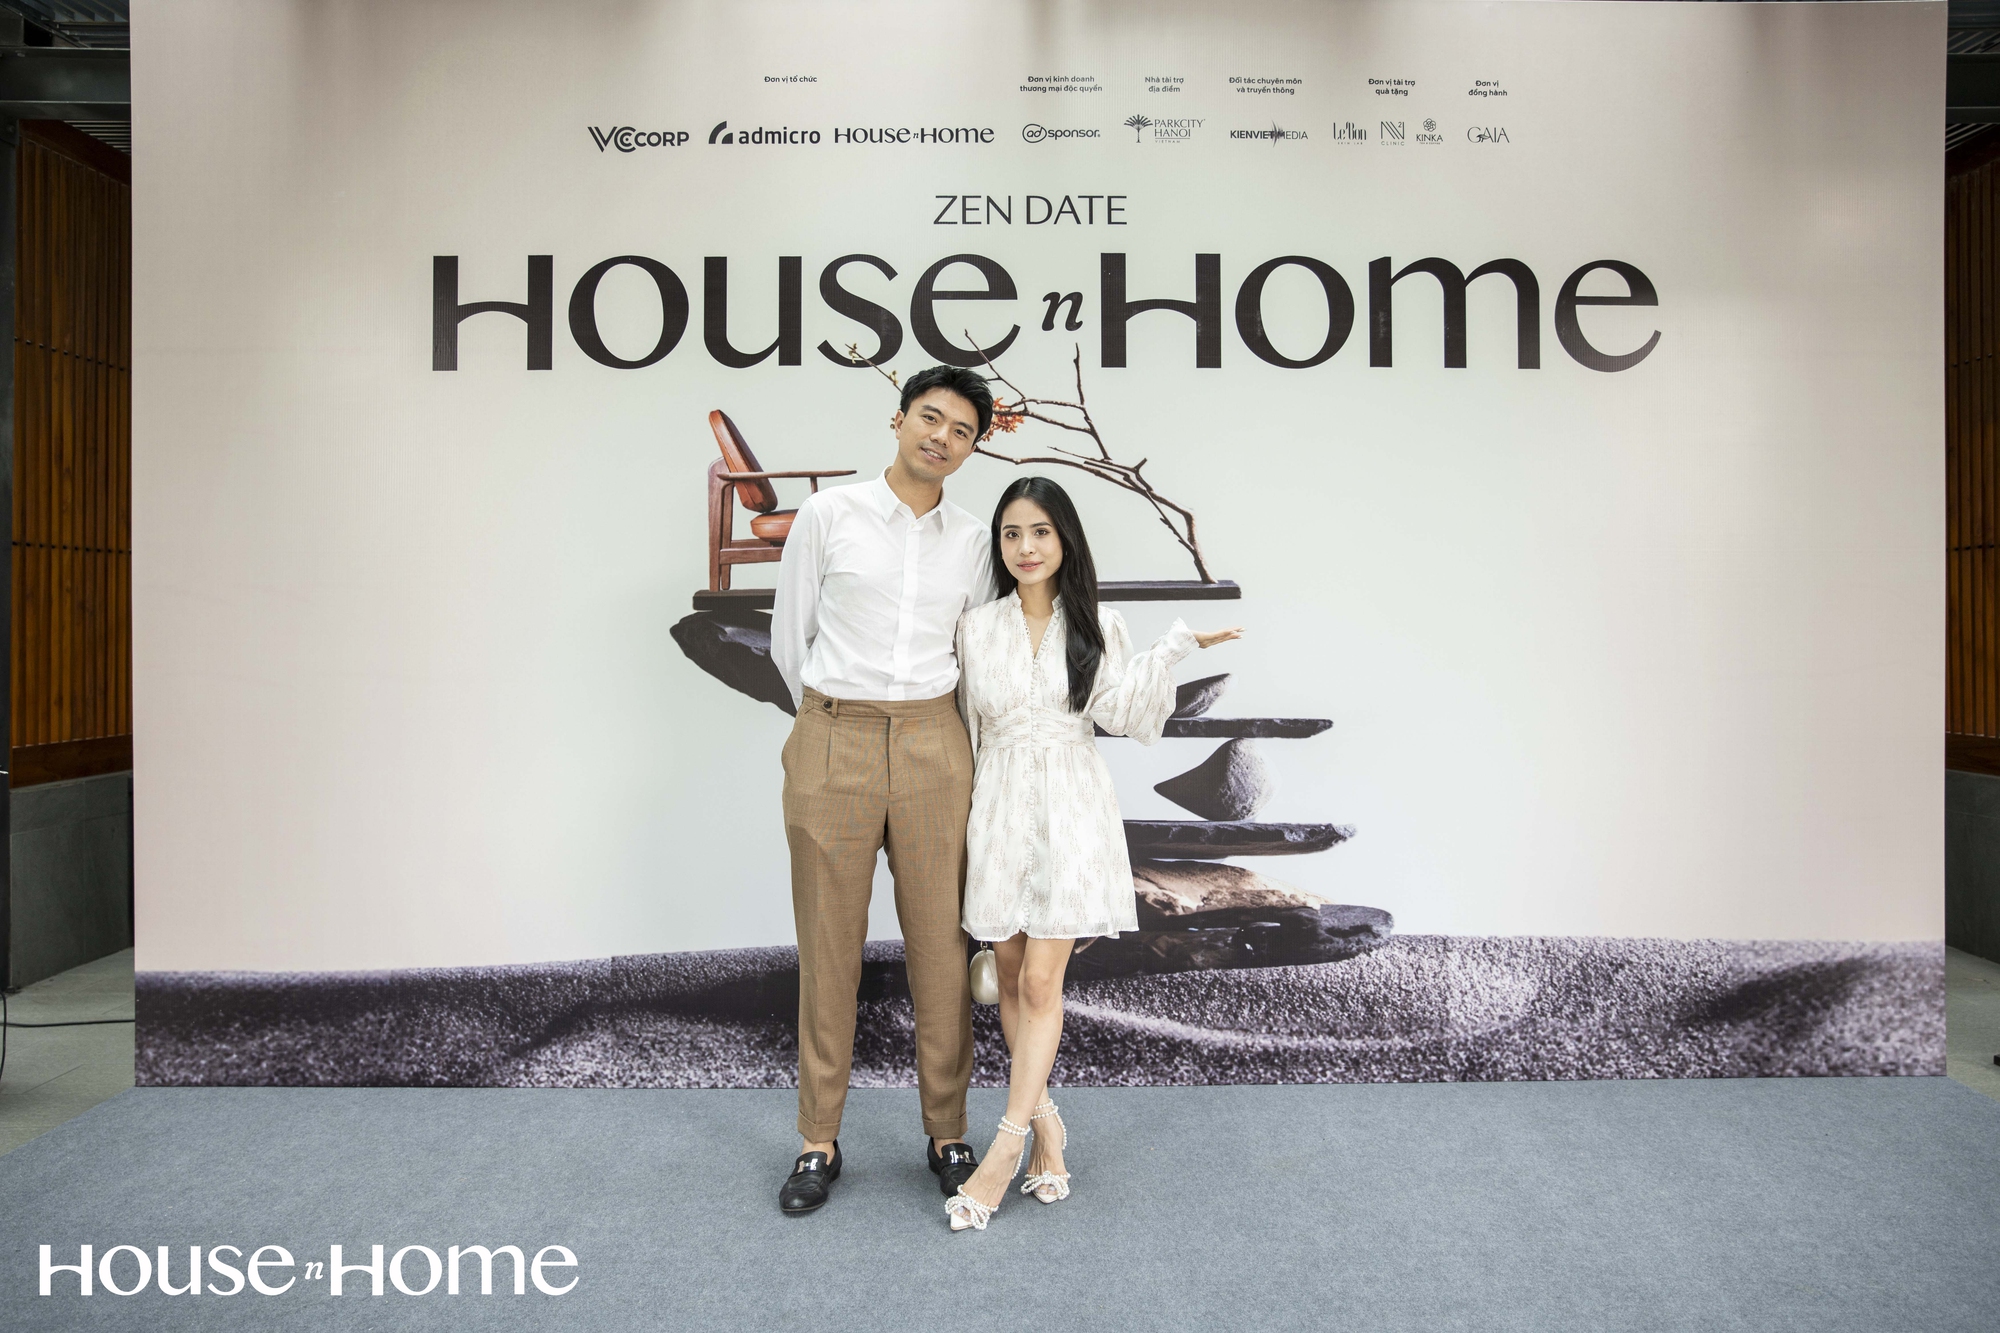 Chuỗi Inspiration Date của House n Home: Điểm chạm của những người yêu “nhà”, đem lại những trải nghiệm giúp nâng tầm không gian sống - Ảnh 1.